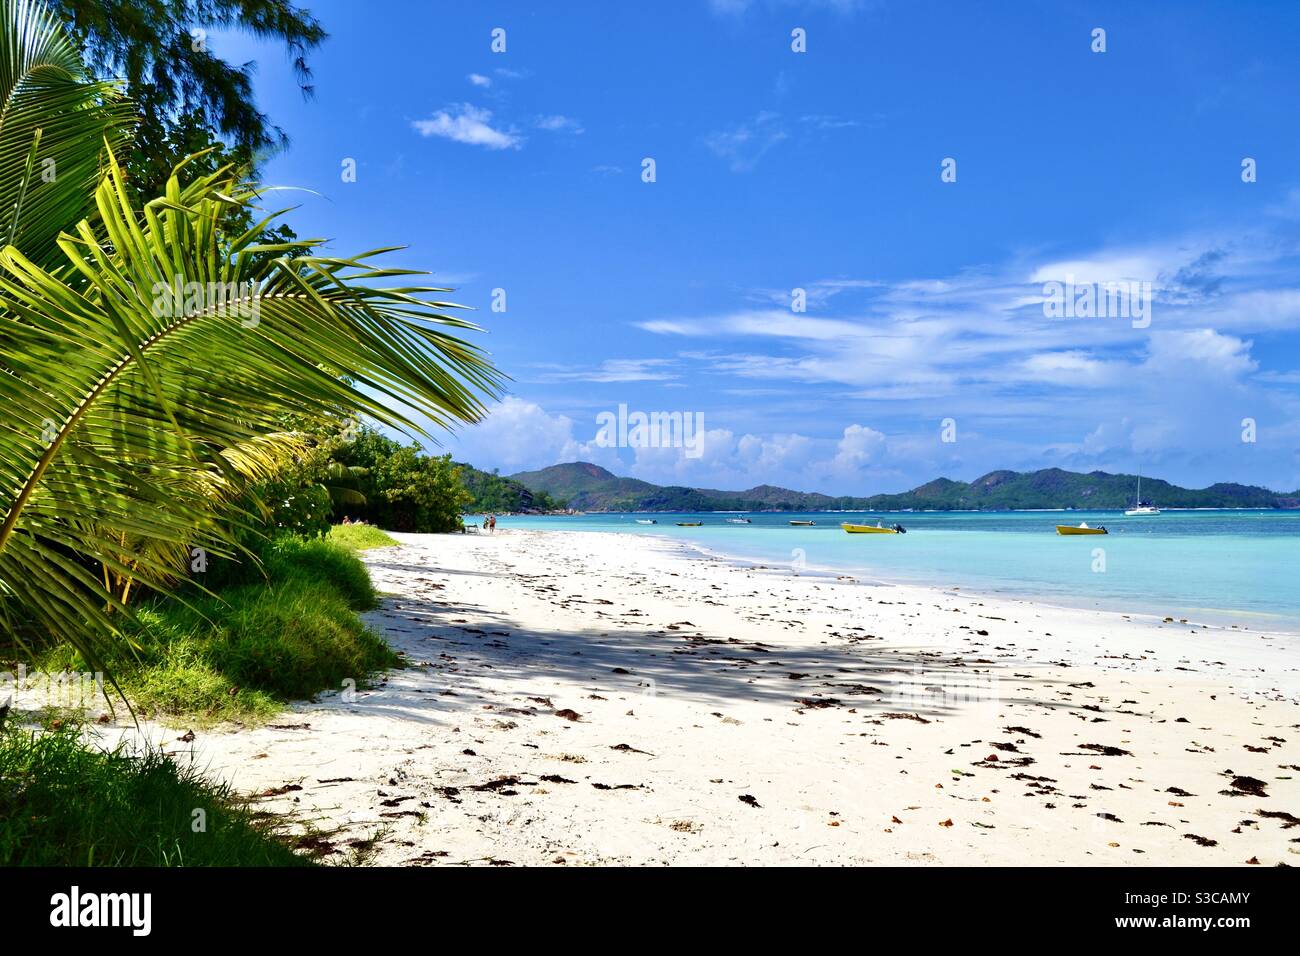 La più bella spiaggia esotica e tropicale sul glamour isola delle Seychelles in estate con sabbia bianca Acque blu turchese dell'Oceano Indiano e palme Foto Stock